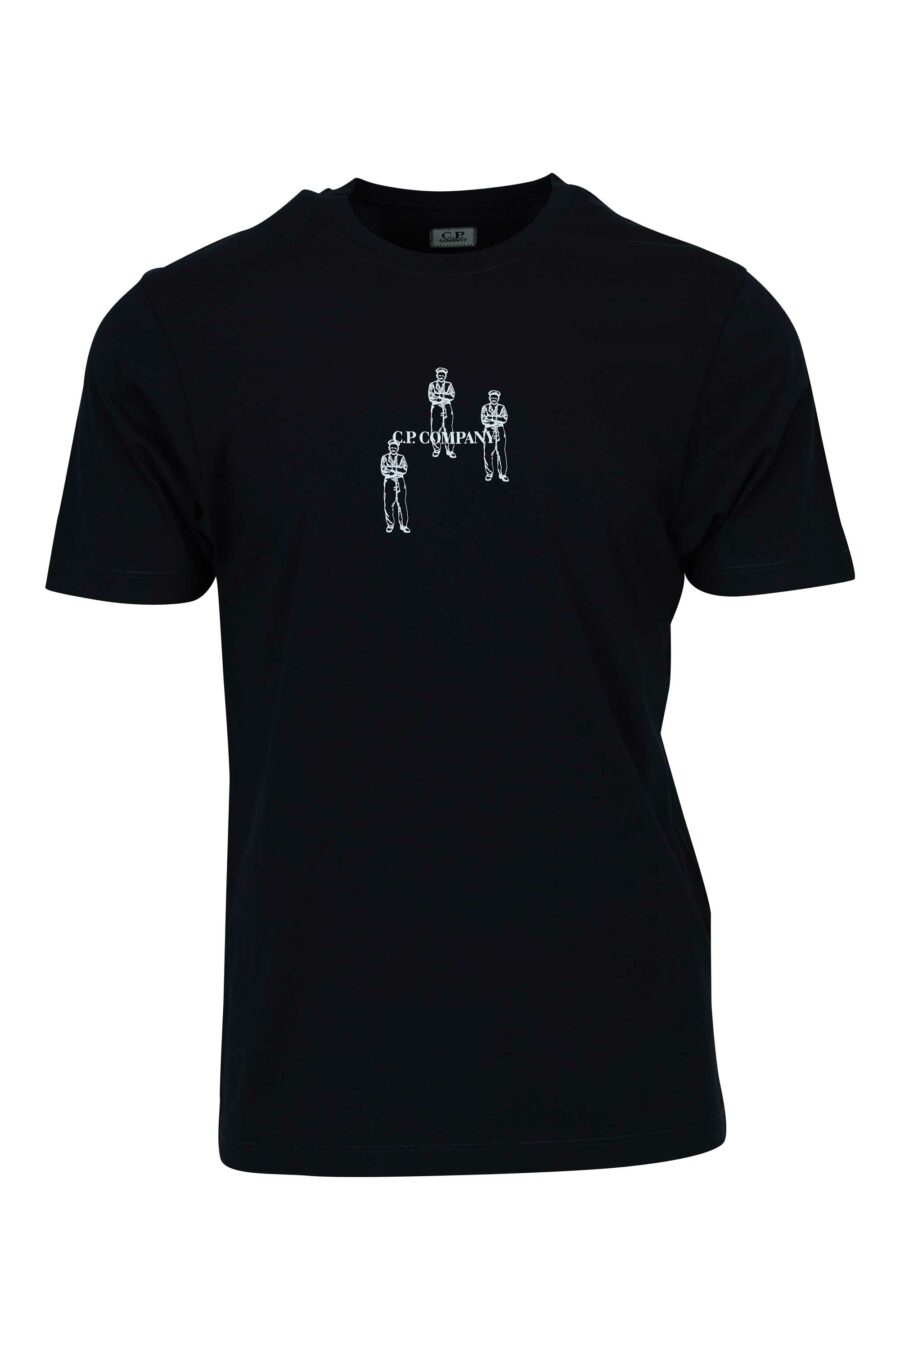 Dunkelblaues T-Shirt mit Minilogue "cp" mit zentrierten Matrosen - 7620943764710 2